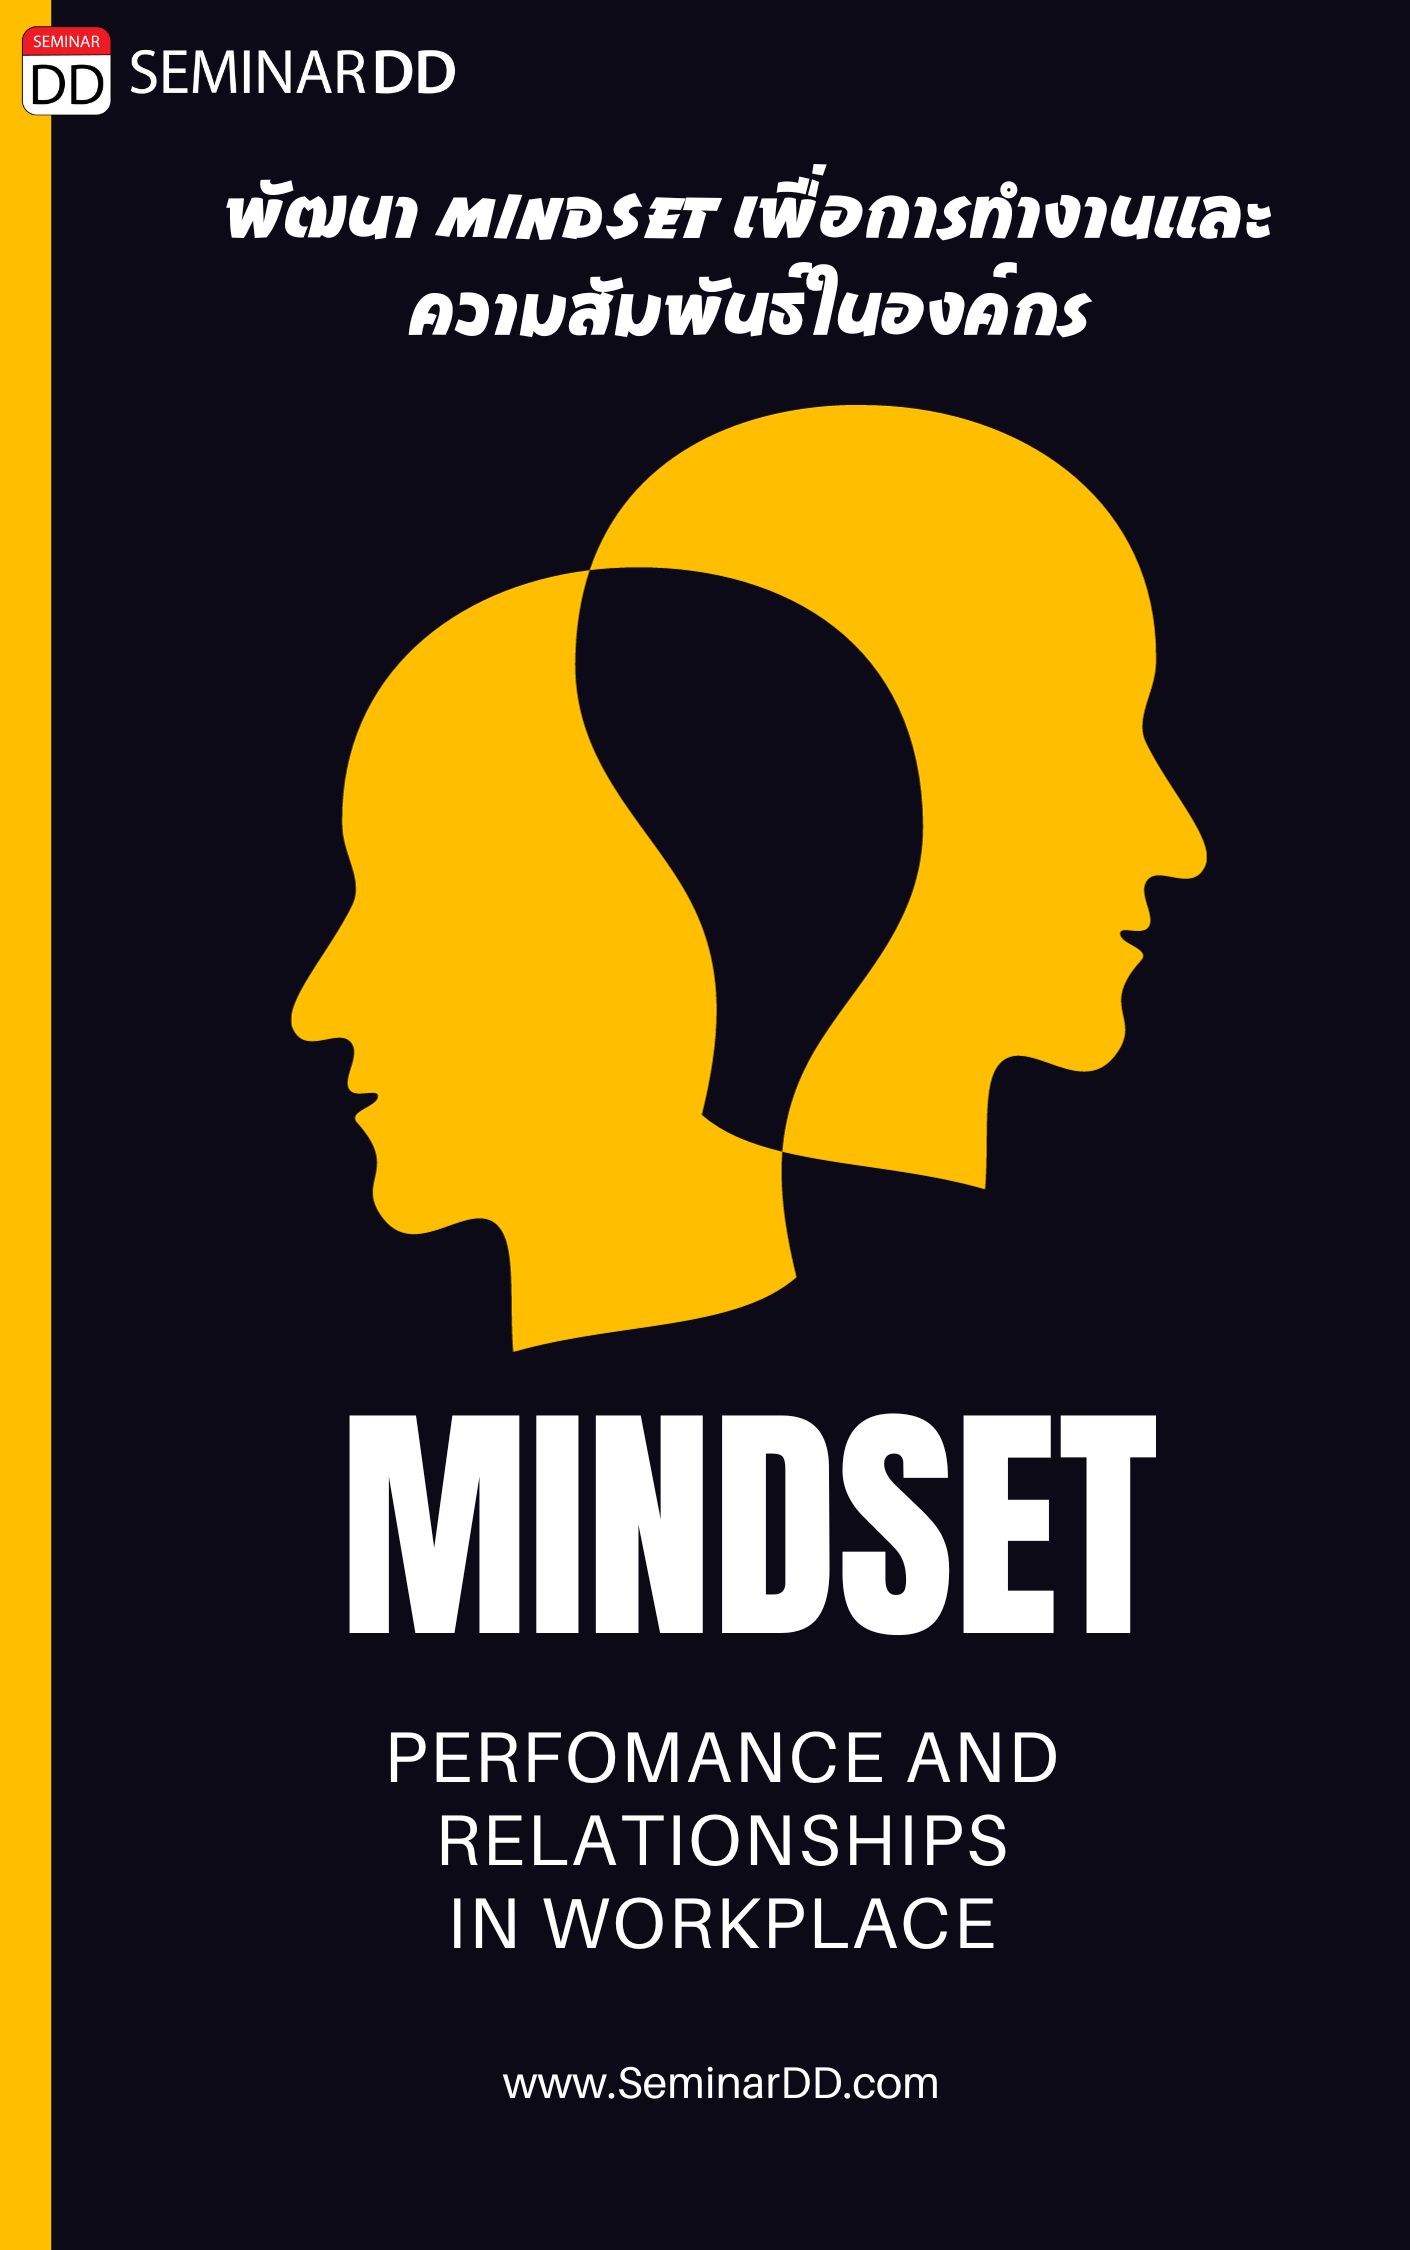 หลักสูตร หลักสูตรอบรม การพัฒนา Mindset เพื่อการทำงานและการความสัมพันธ์ในองค์กร (Mindset for Performance and Relationships in workplace)